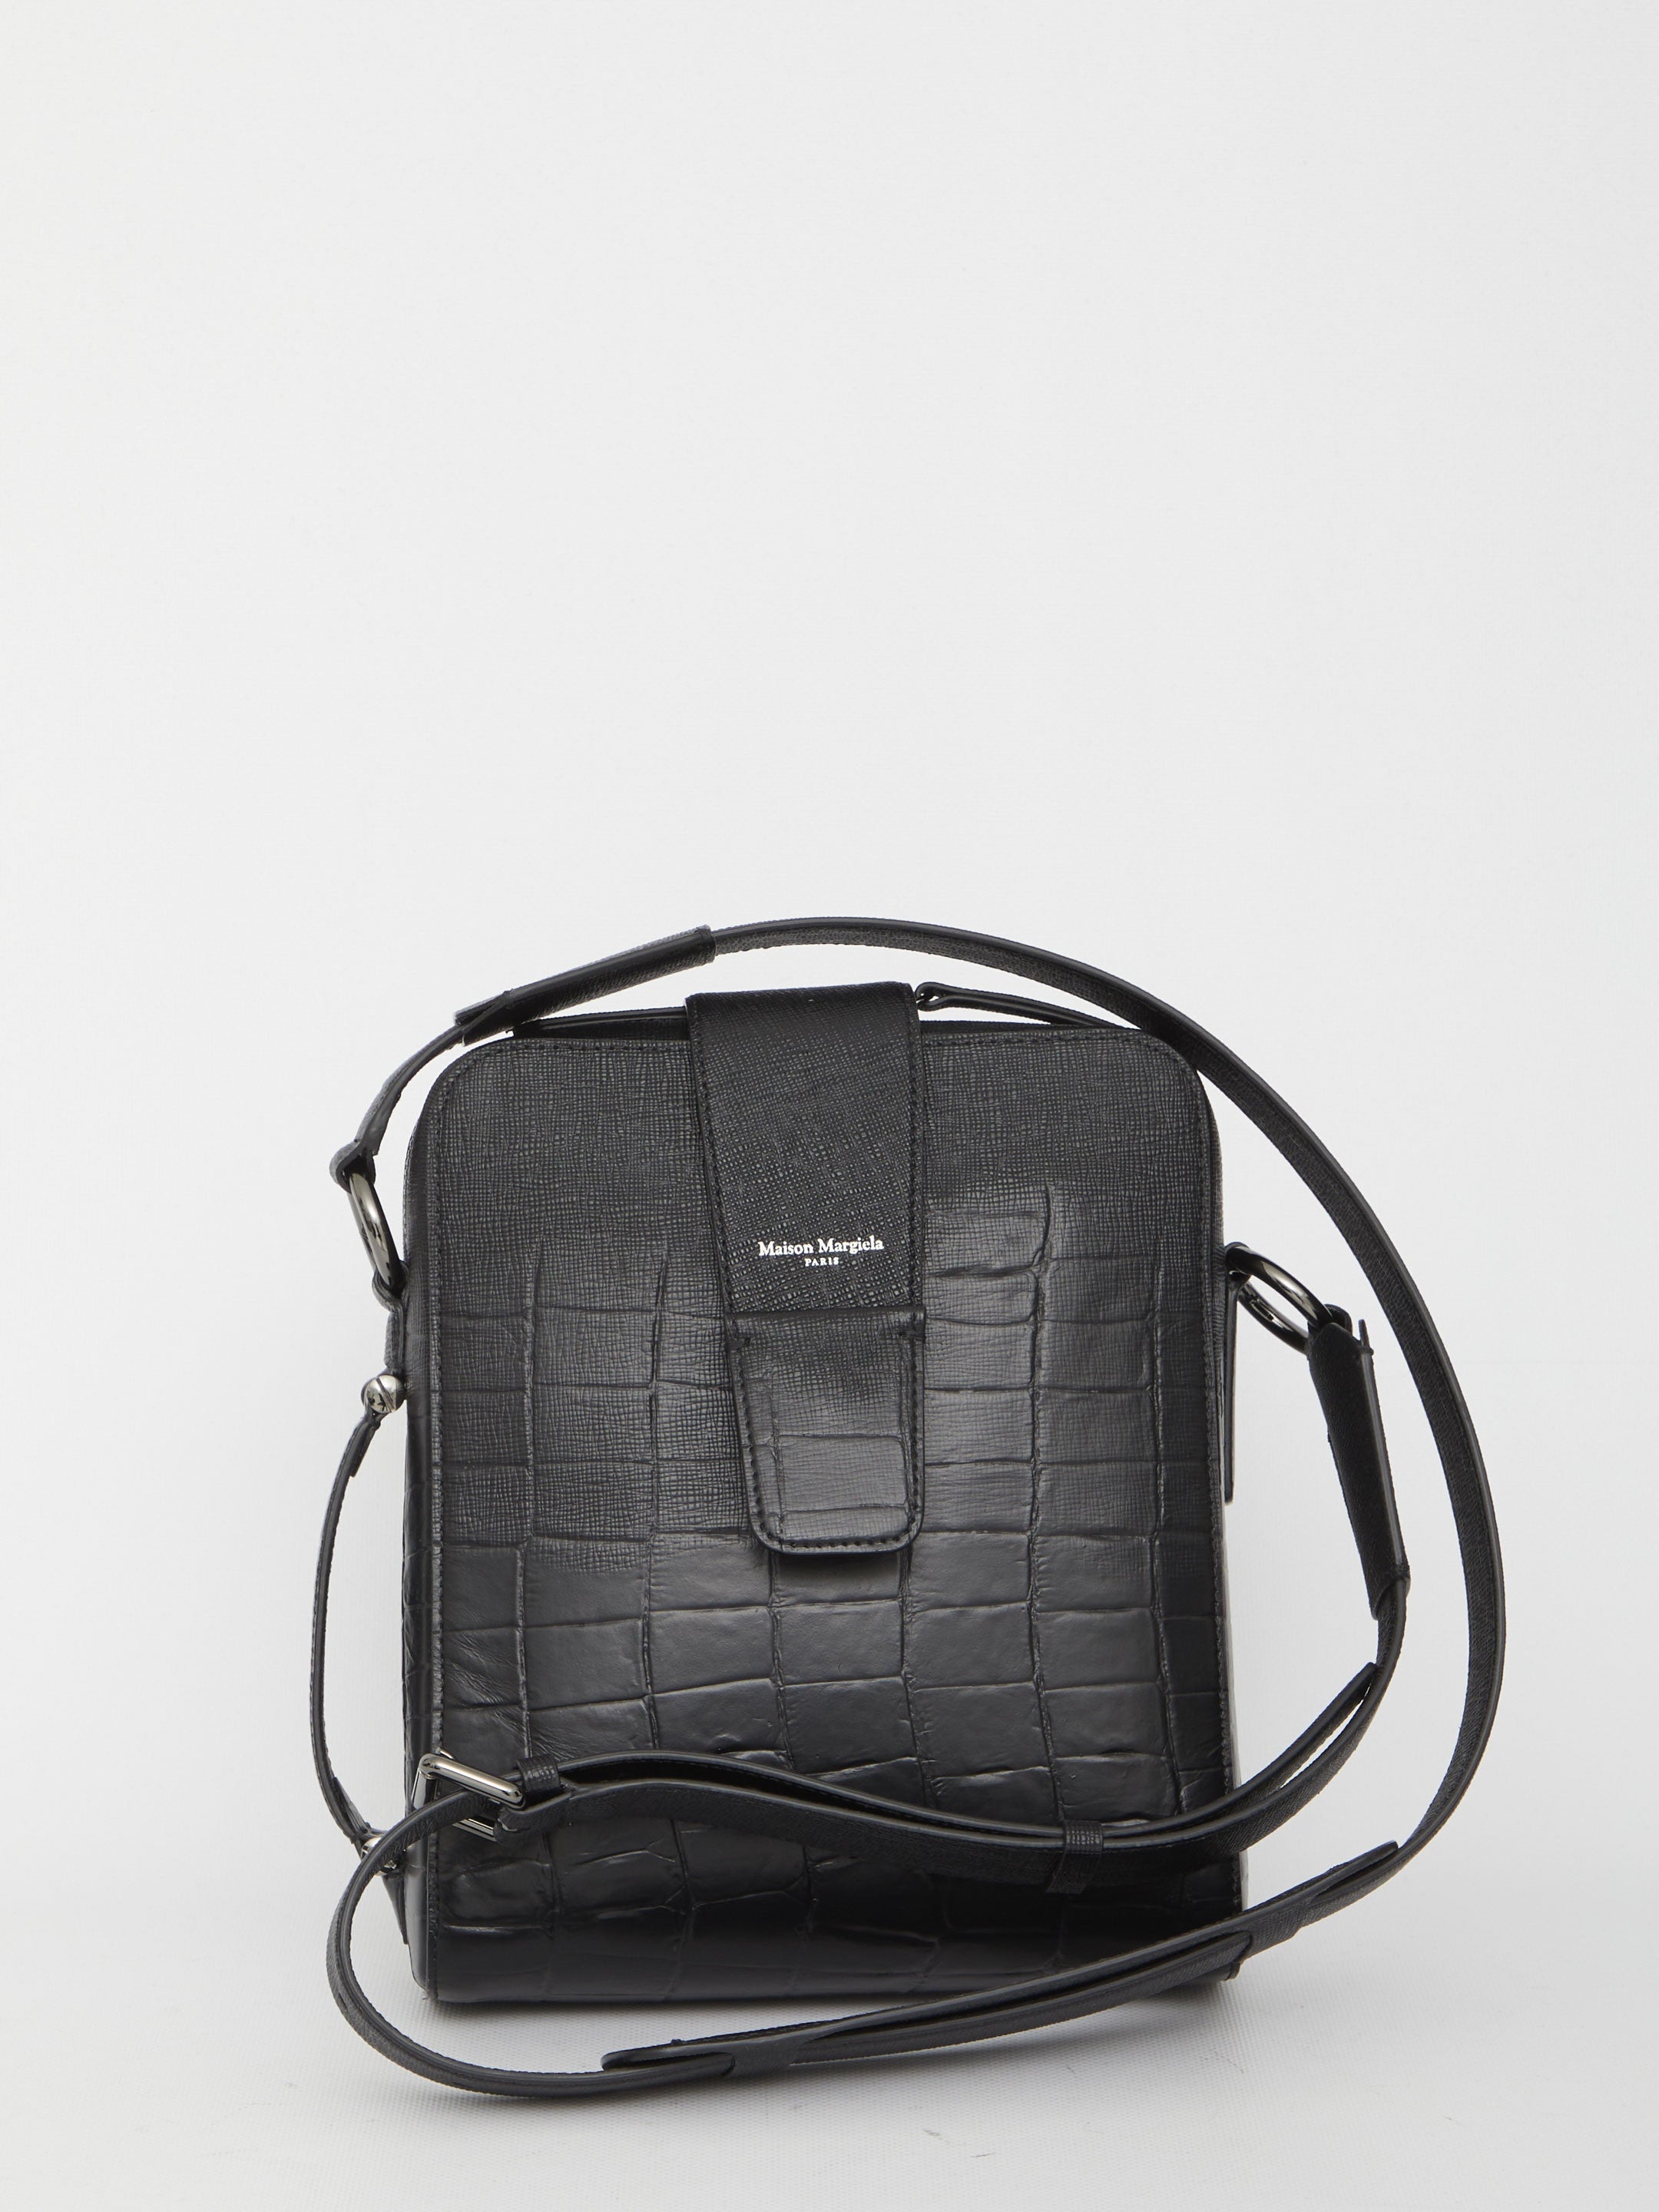 MAISON-MARGIELA-OUTLET-SALE-four-stitch-leather-shoulder-bag-Taschen-QT-BLACK-ARCHIVE-COLLECTION.jpg